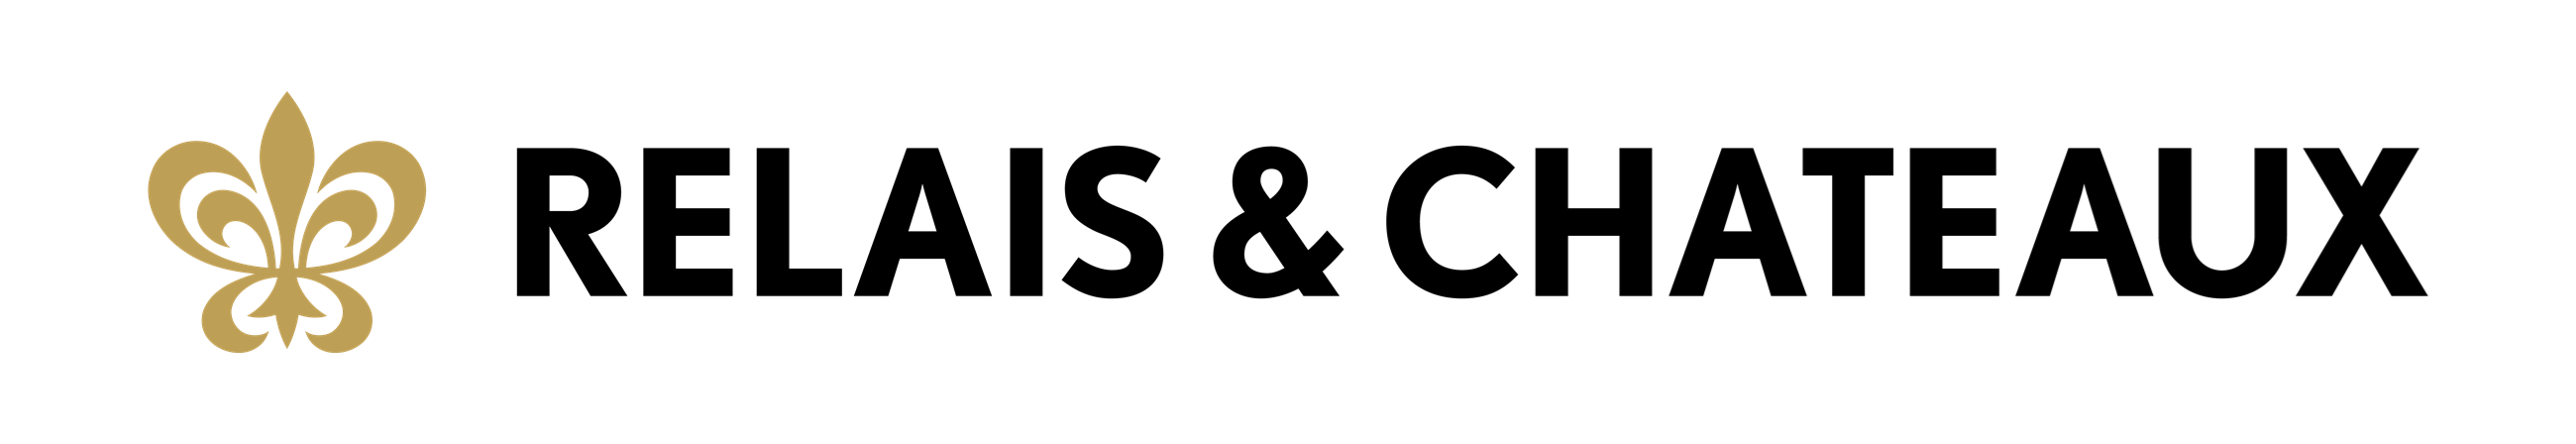 logo noir et doré liggende